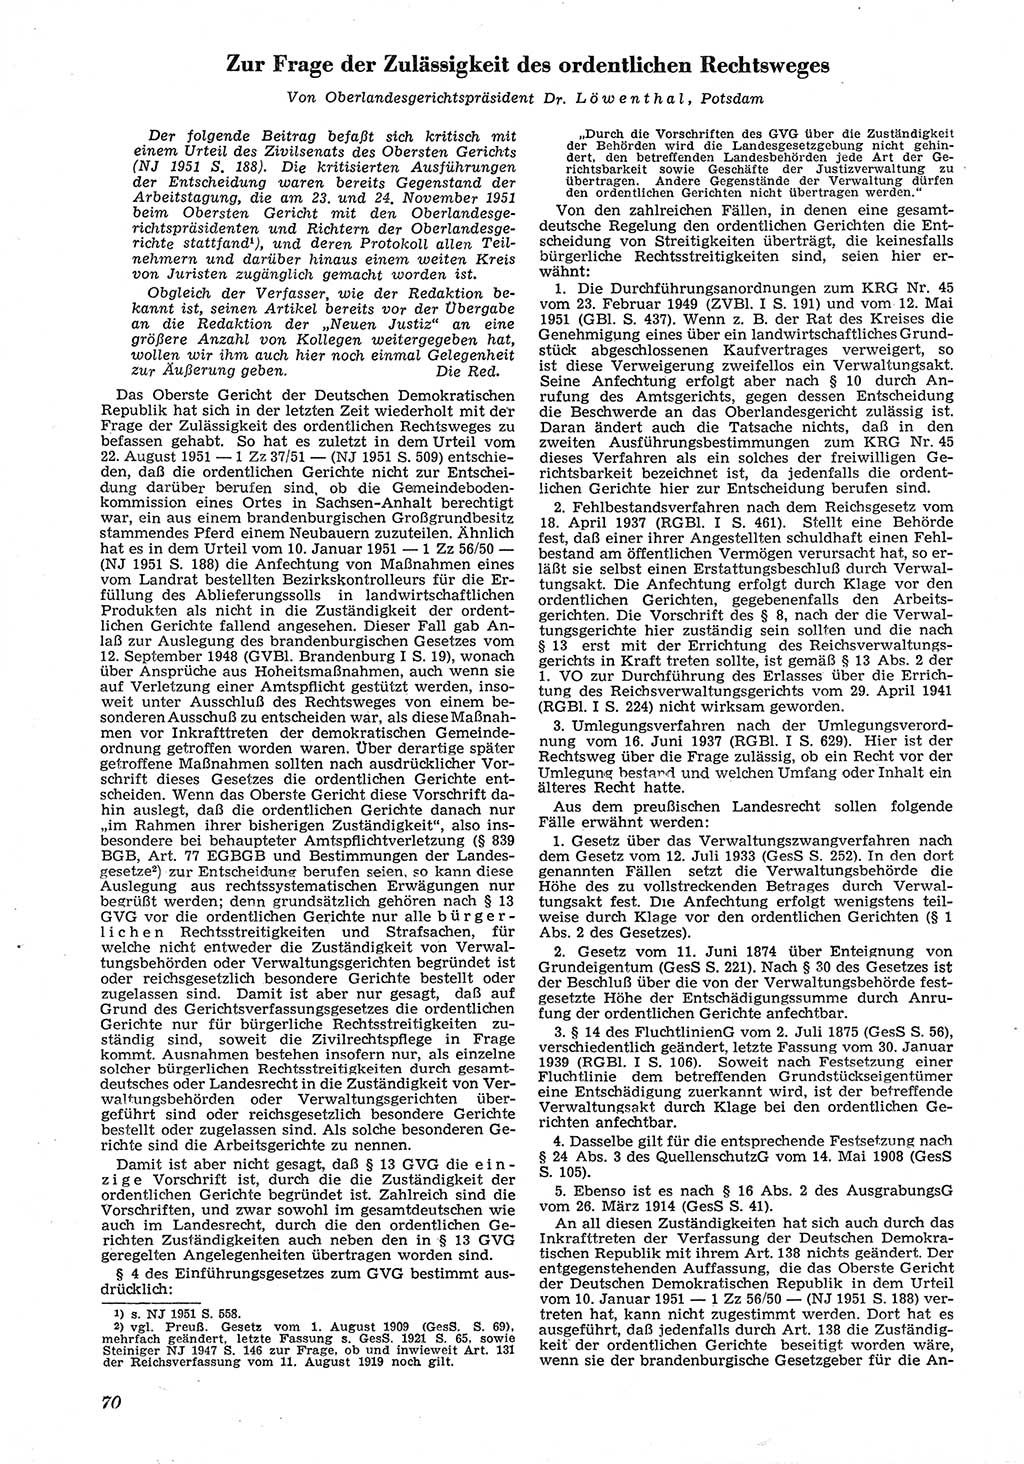 Neue Justiz (NJ), Zeitschrift für Recht und Rechtswissenschaft [Deutsche Demokratische Republik (DDR)], 6. Jahrgang 1952, Seite 70 (NJ DDR 1952, S. 70)